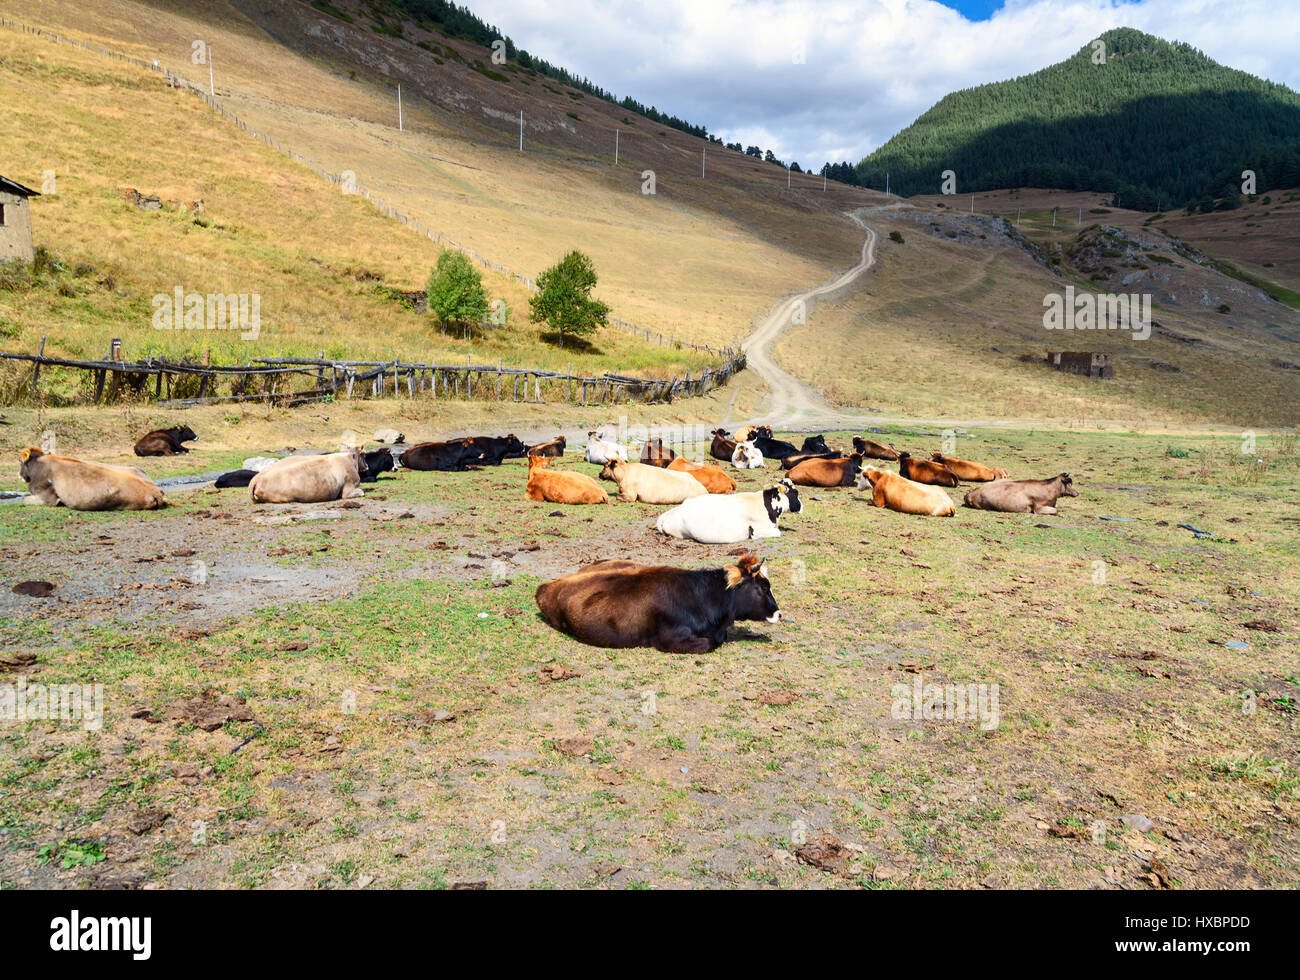 Les vaches sont au pâturage dans les montagnes. Tusheti région. La Géorgie Banque D'Images